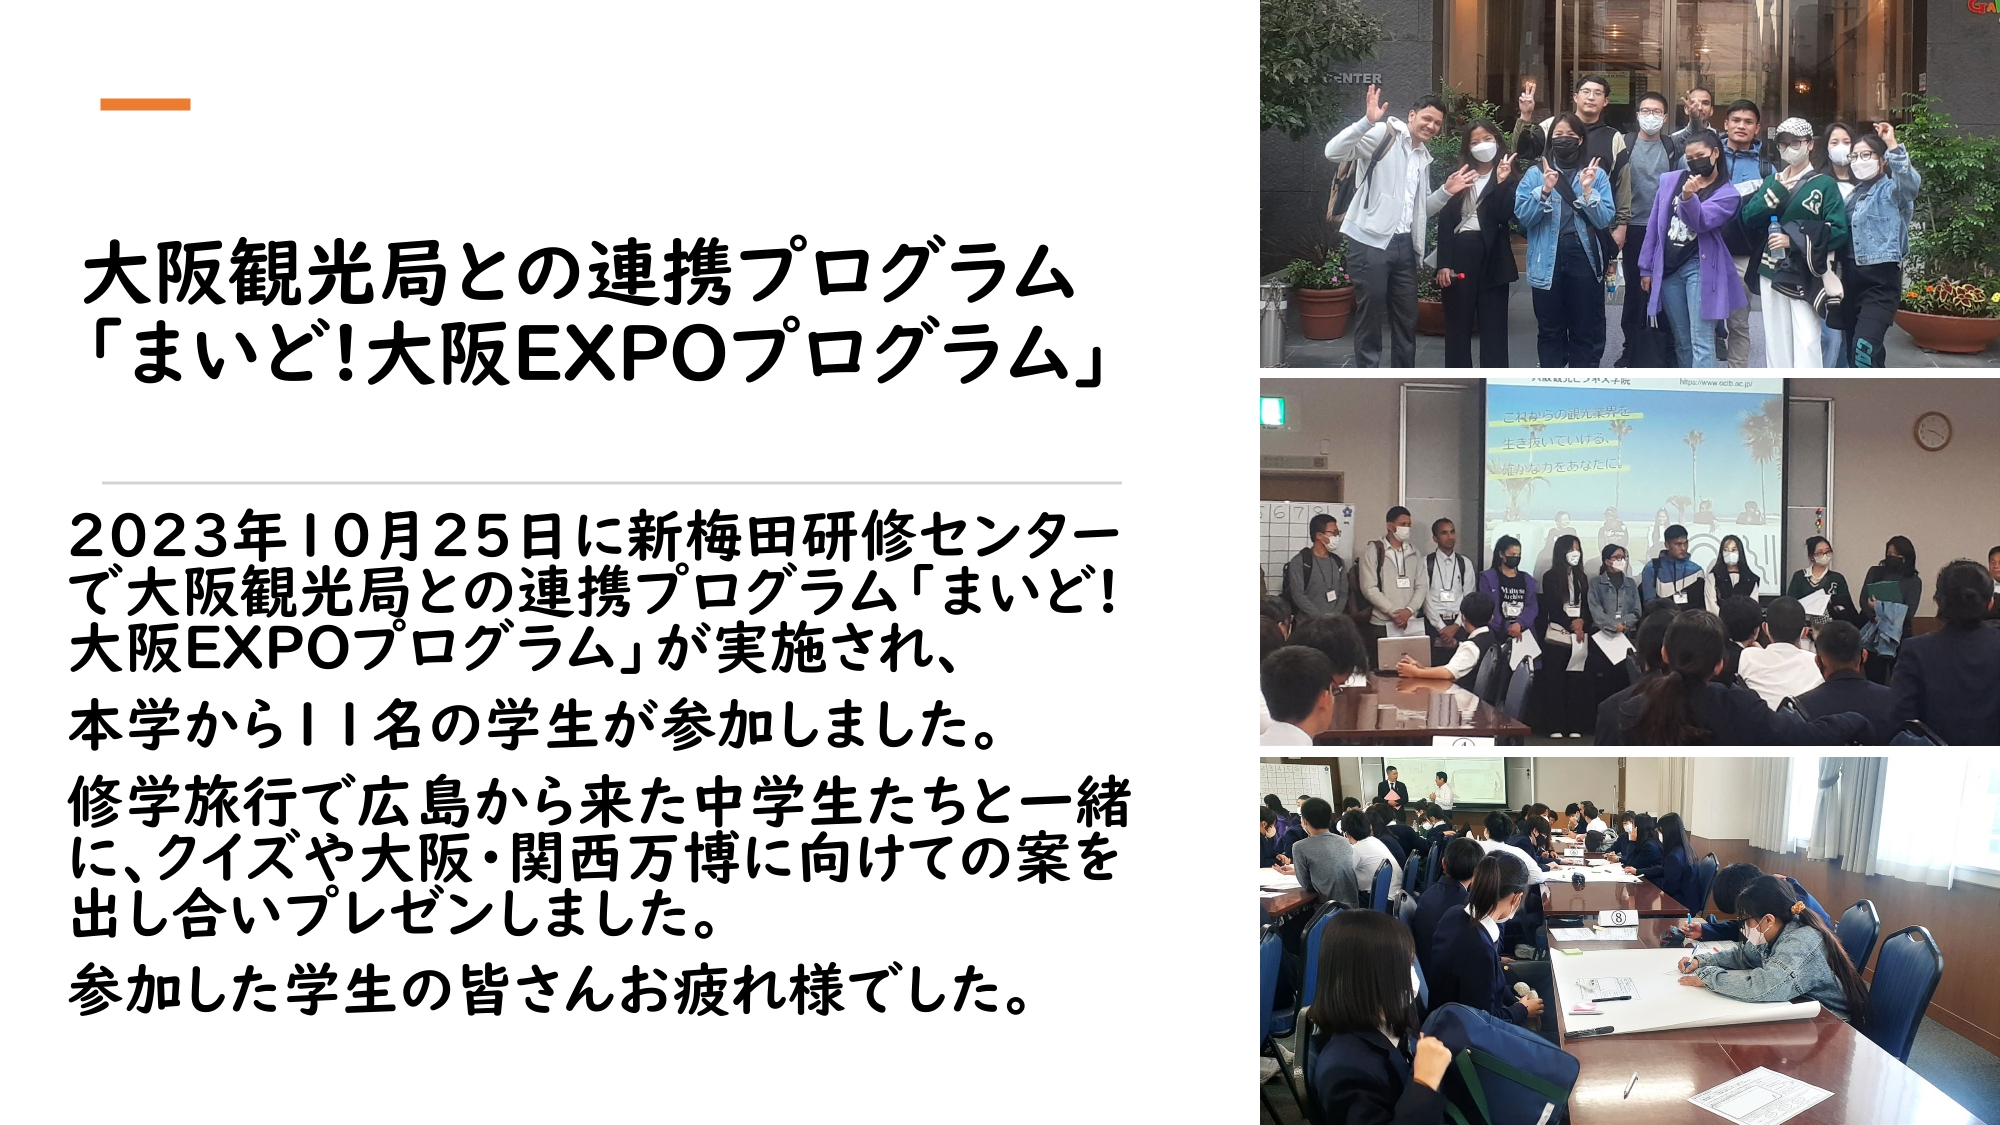 大阪観光局主催の「まいど！大阪EXPOプログラム」に本校の学生が参加しました。